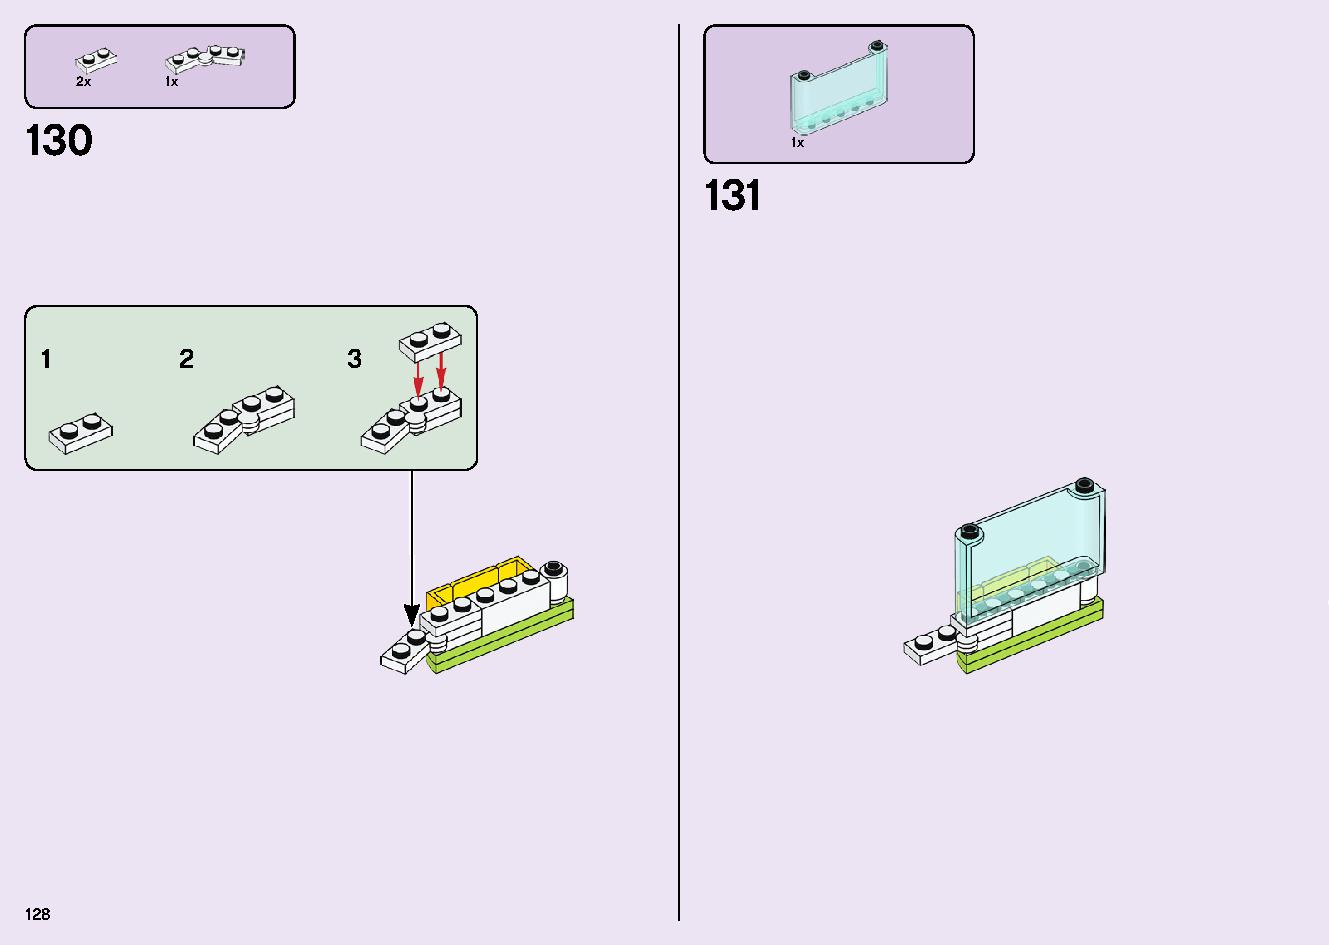 フレンズのうきうきハッピー・バス 41395 レゴの商品情報 レゴの説明書・組立方法 128 page